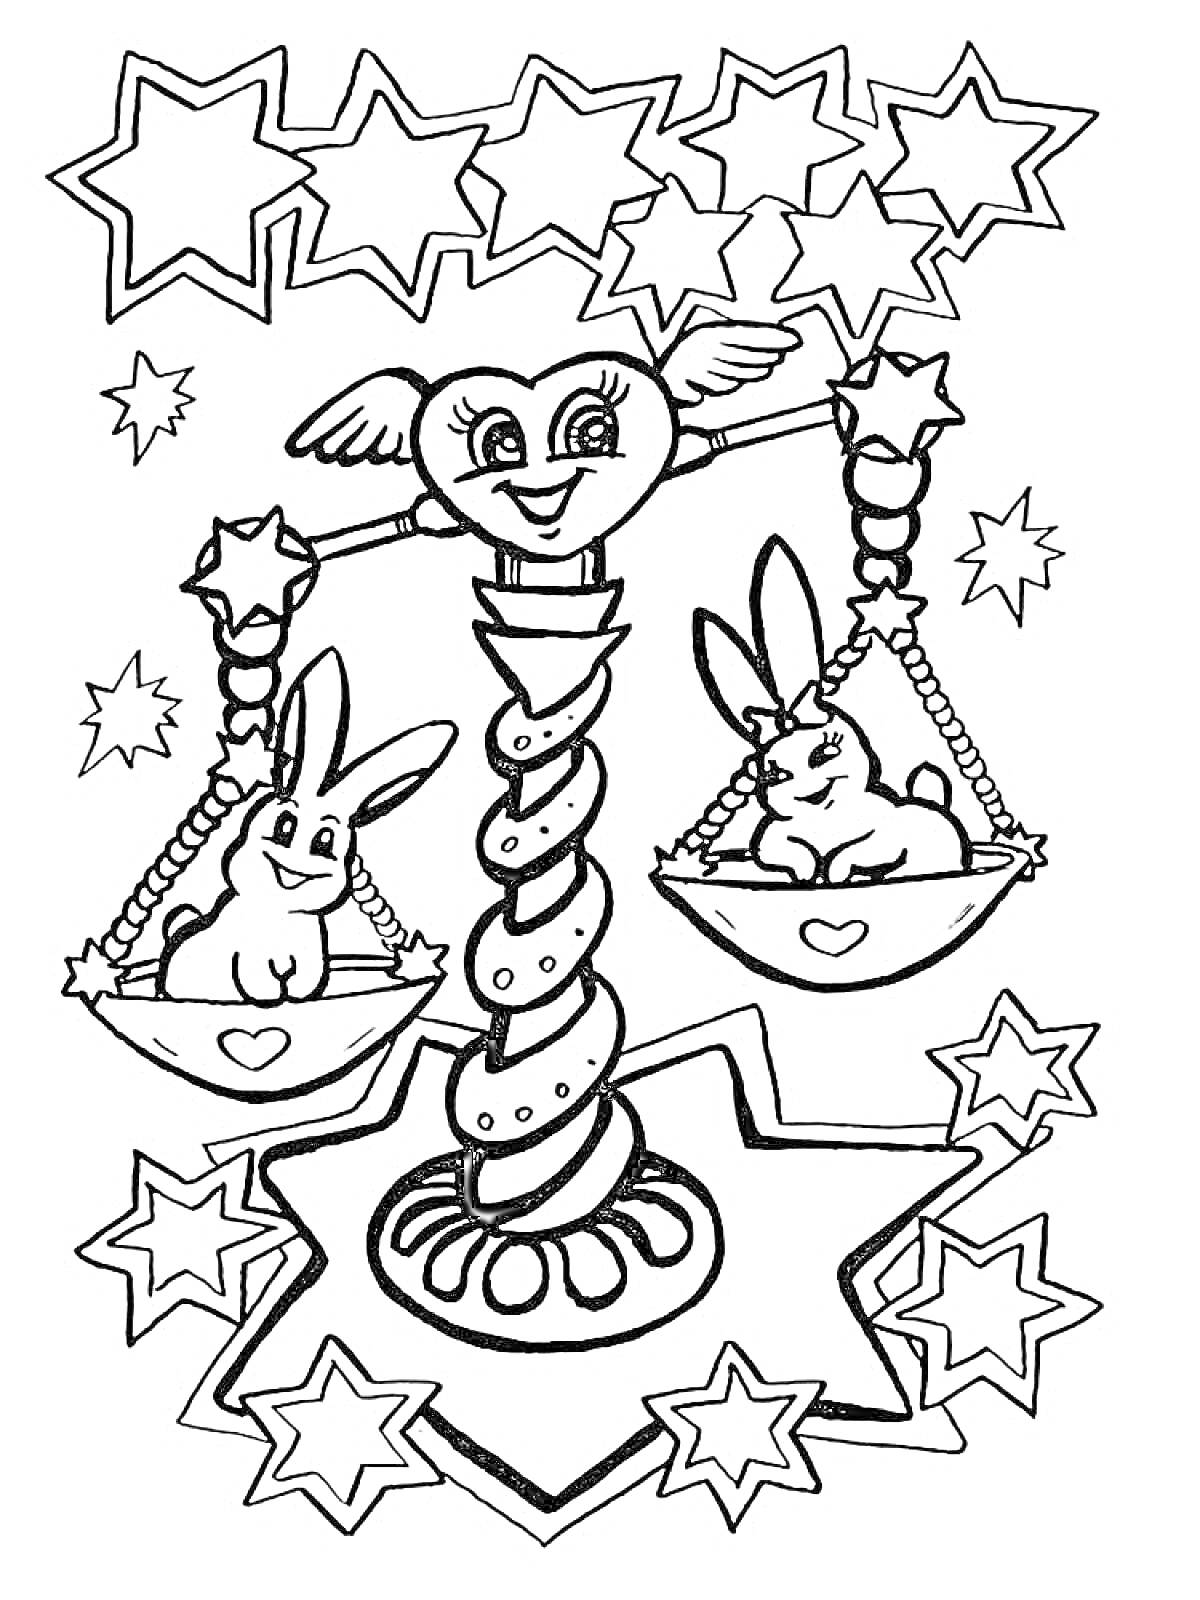 Раскраска Знак зодиака Весы с кроликами на чашах весов, окруженные звездами